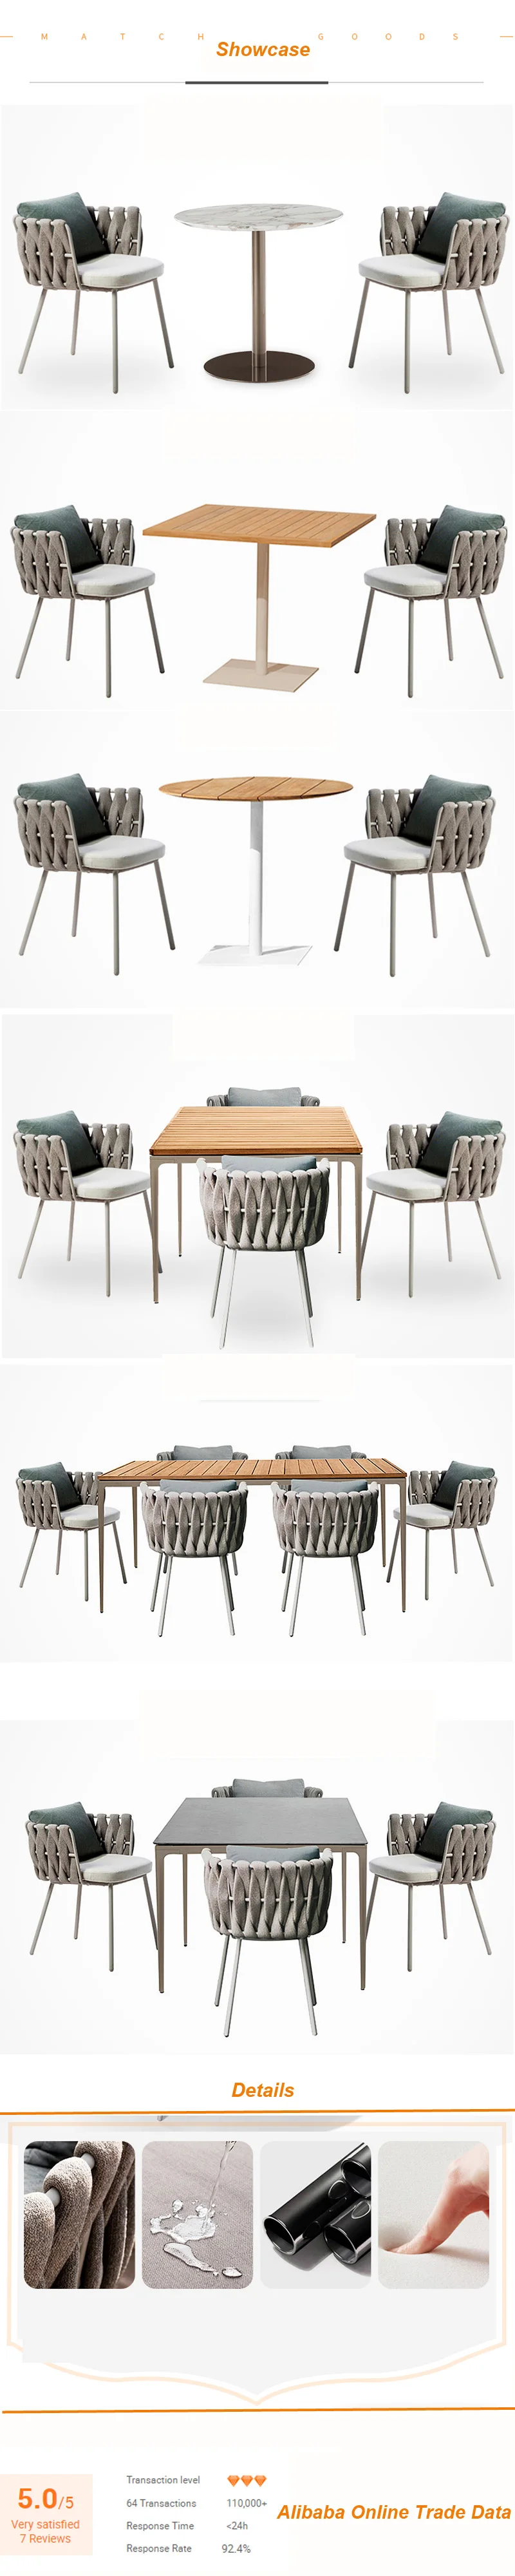 Итальянский обеденный стол дизайн роскошный мраморный топ комплект для обеденного стола